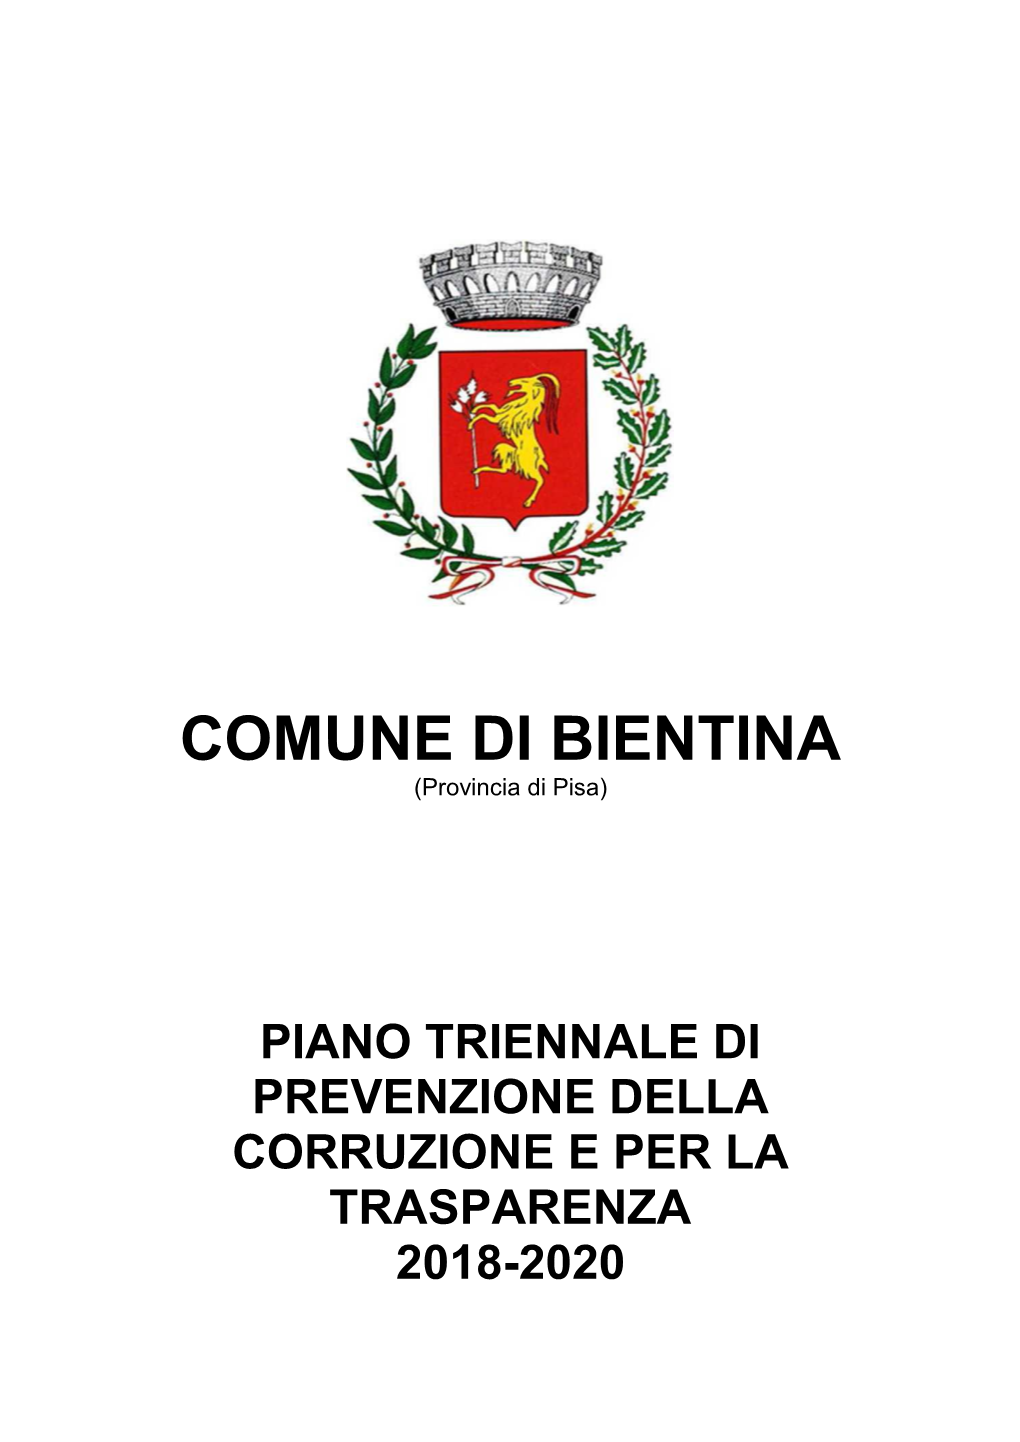 COMUNE DI BIENTINA (Provincia Di Pisa)